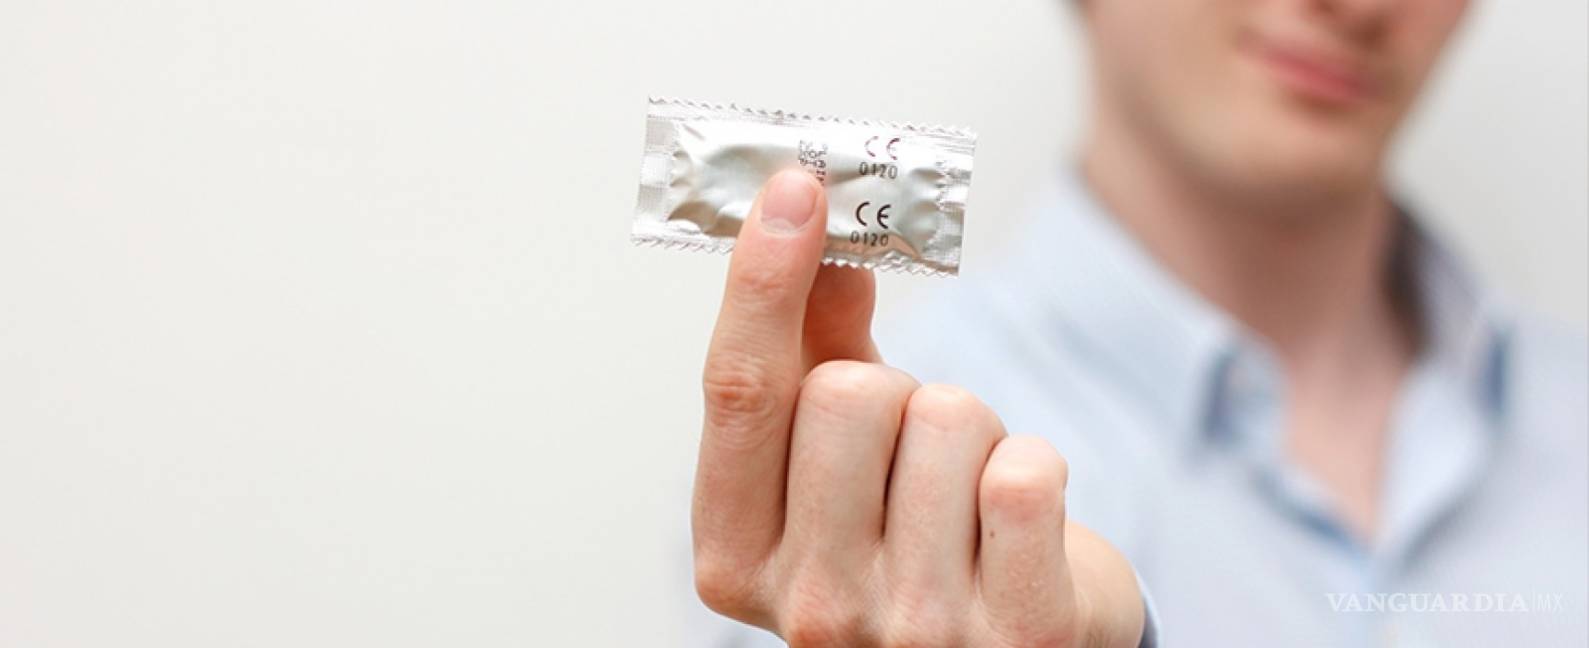 $!Un nuevo anticonceptivo para hombres: Hacer que la planeación de hijos sea de dos